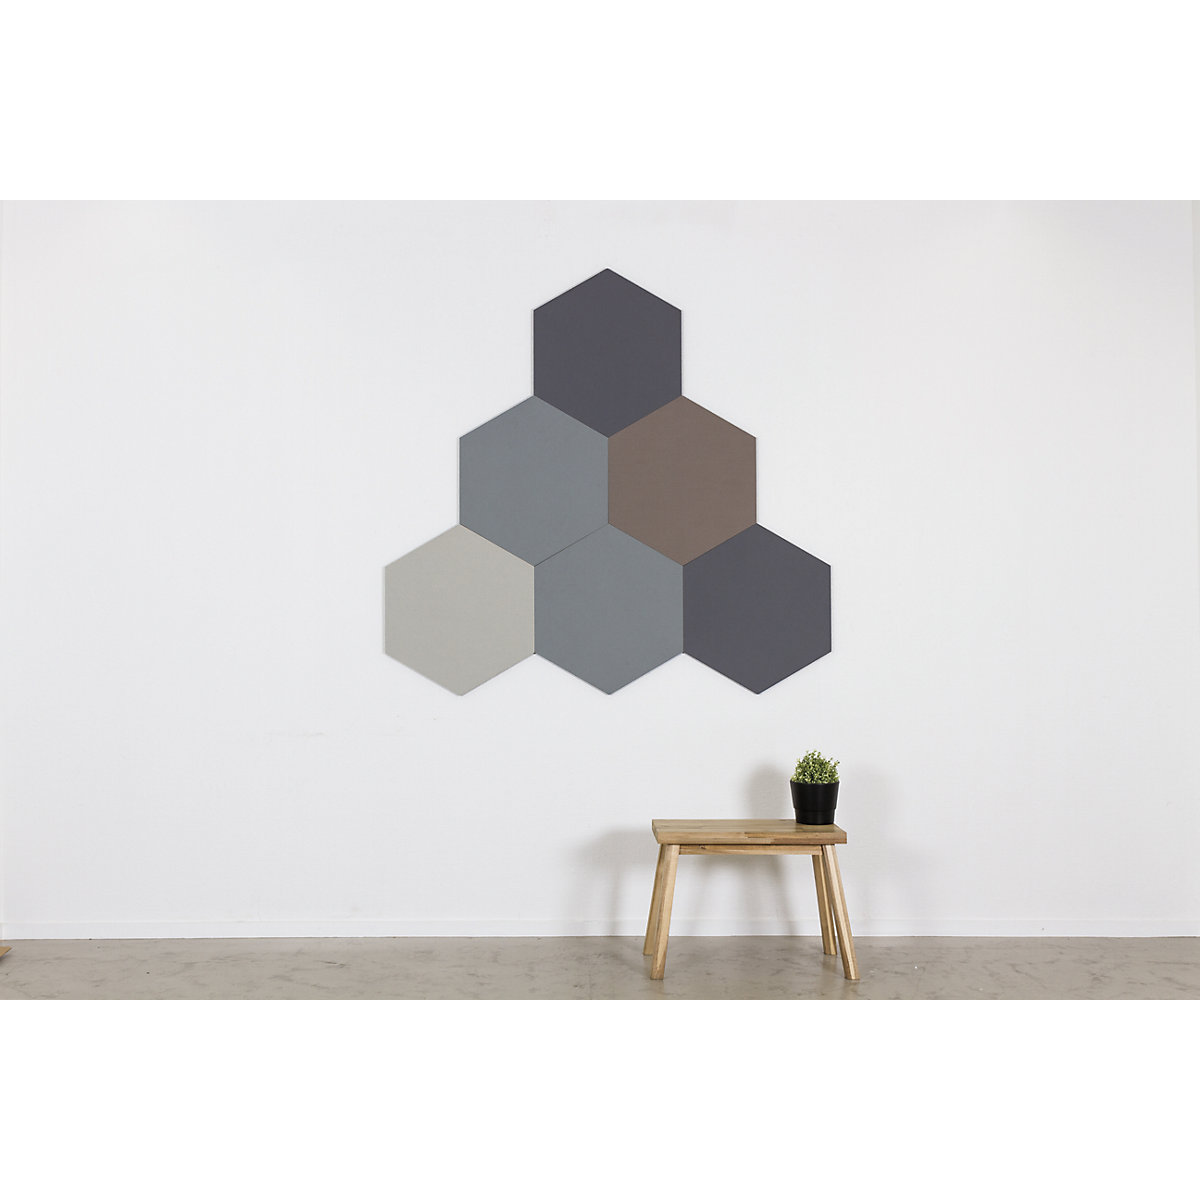 Hexagonal designer pin board – Chameleon (Product illustration 17)-16